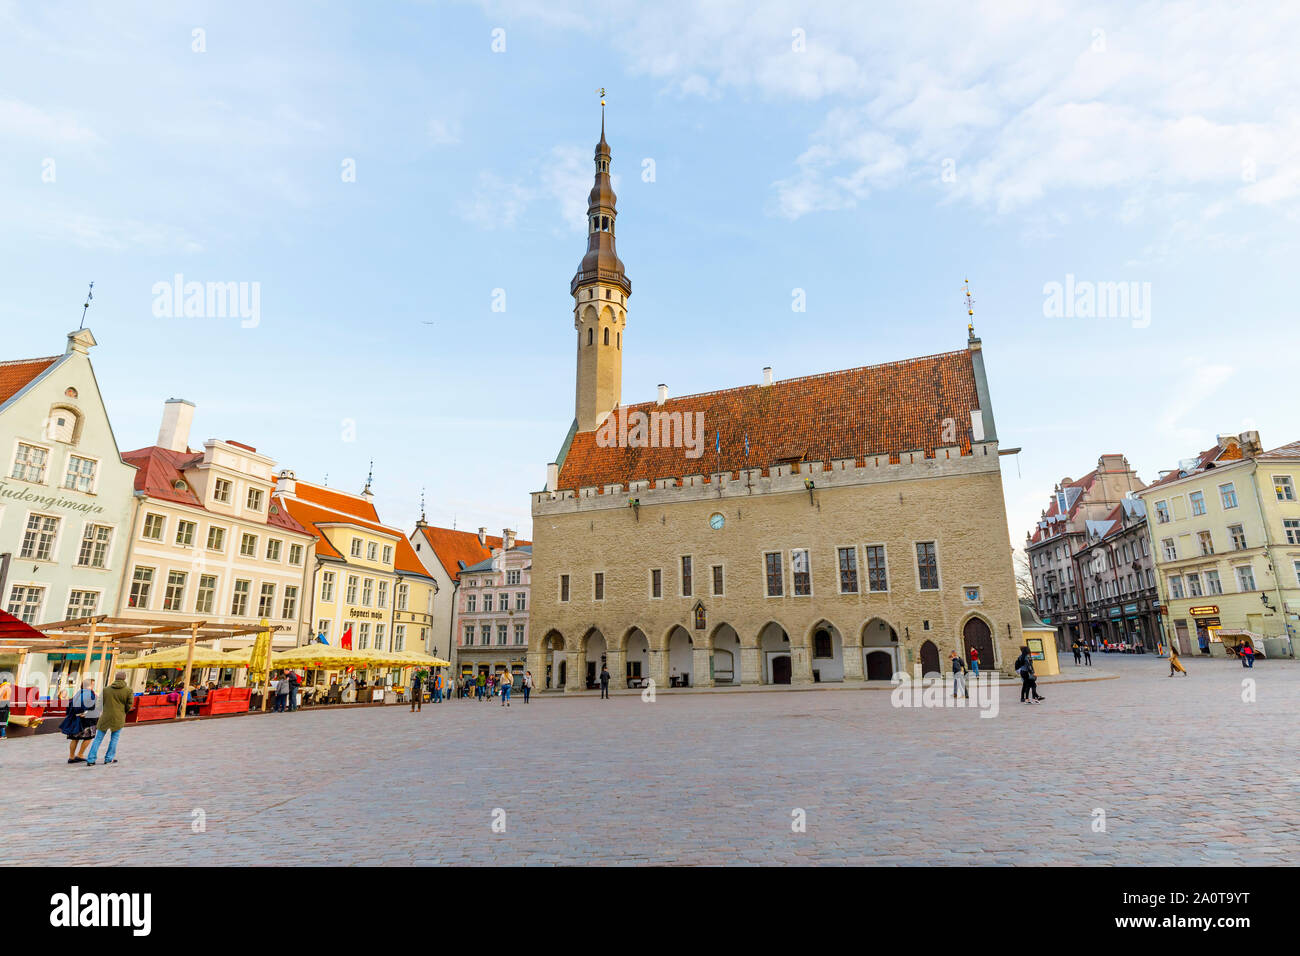 TALLINN, Estonia - 22 Aprile 2019: poche persone a piedi sulla grande piazza del municipio nella città vecchia di Tallinn, Estonia in aprile 2019 Foto Stock